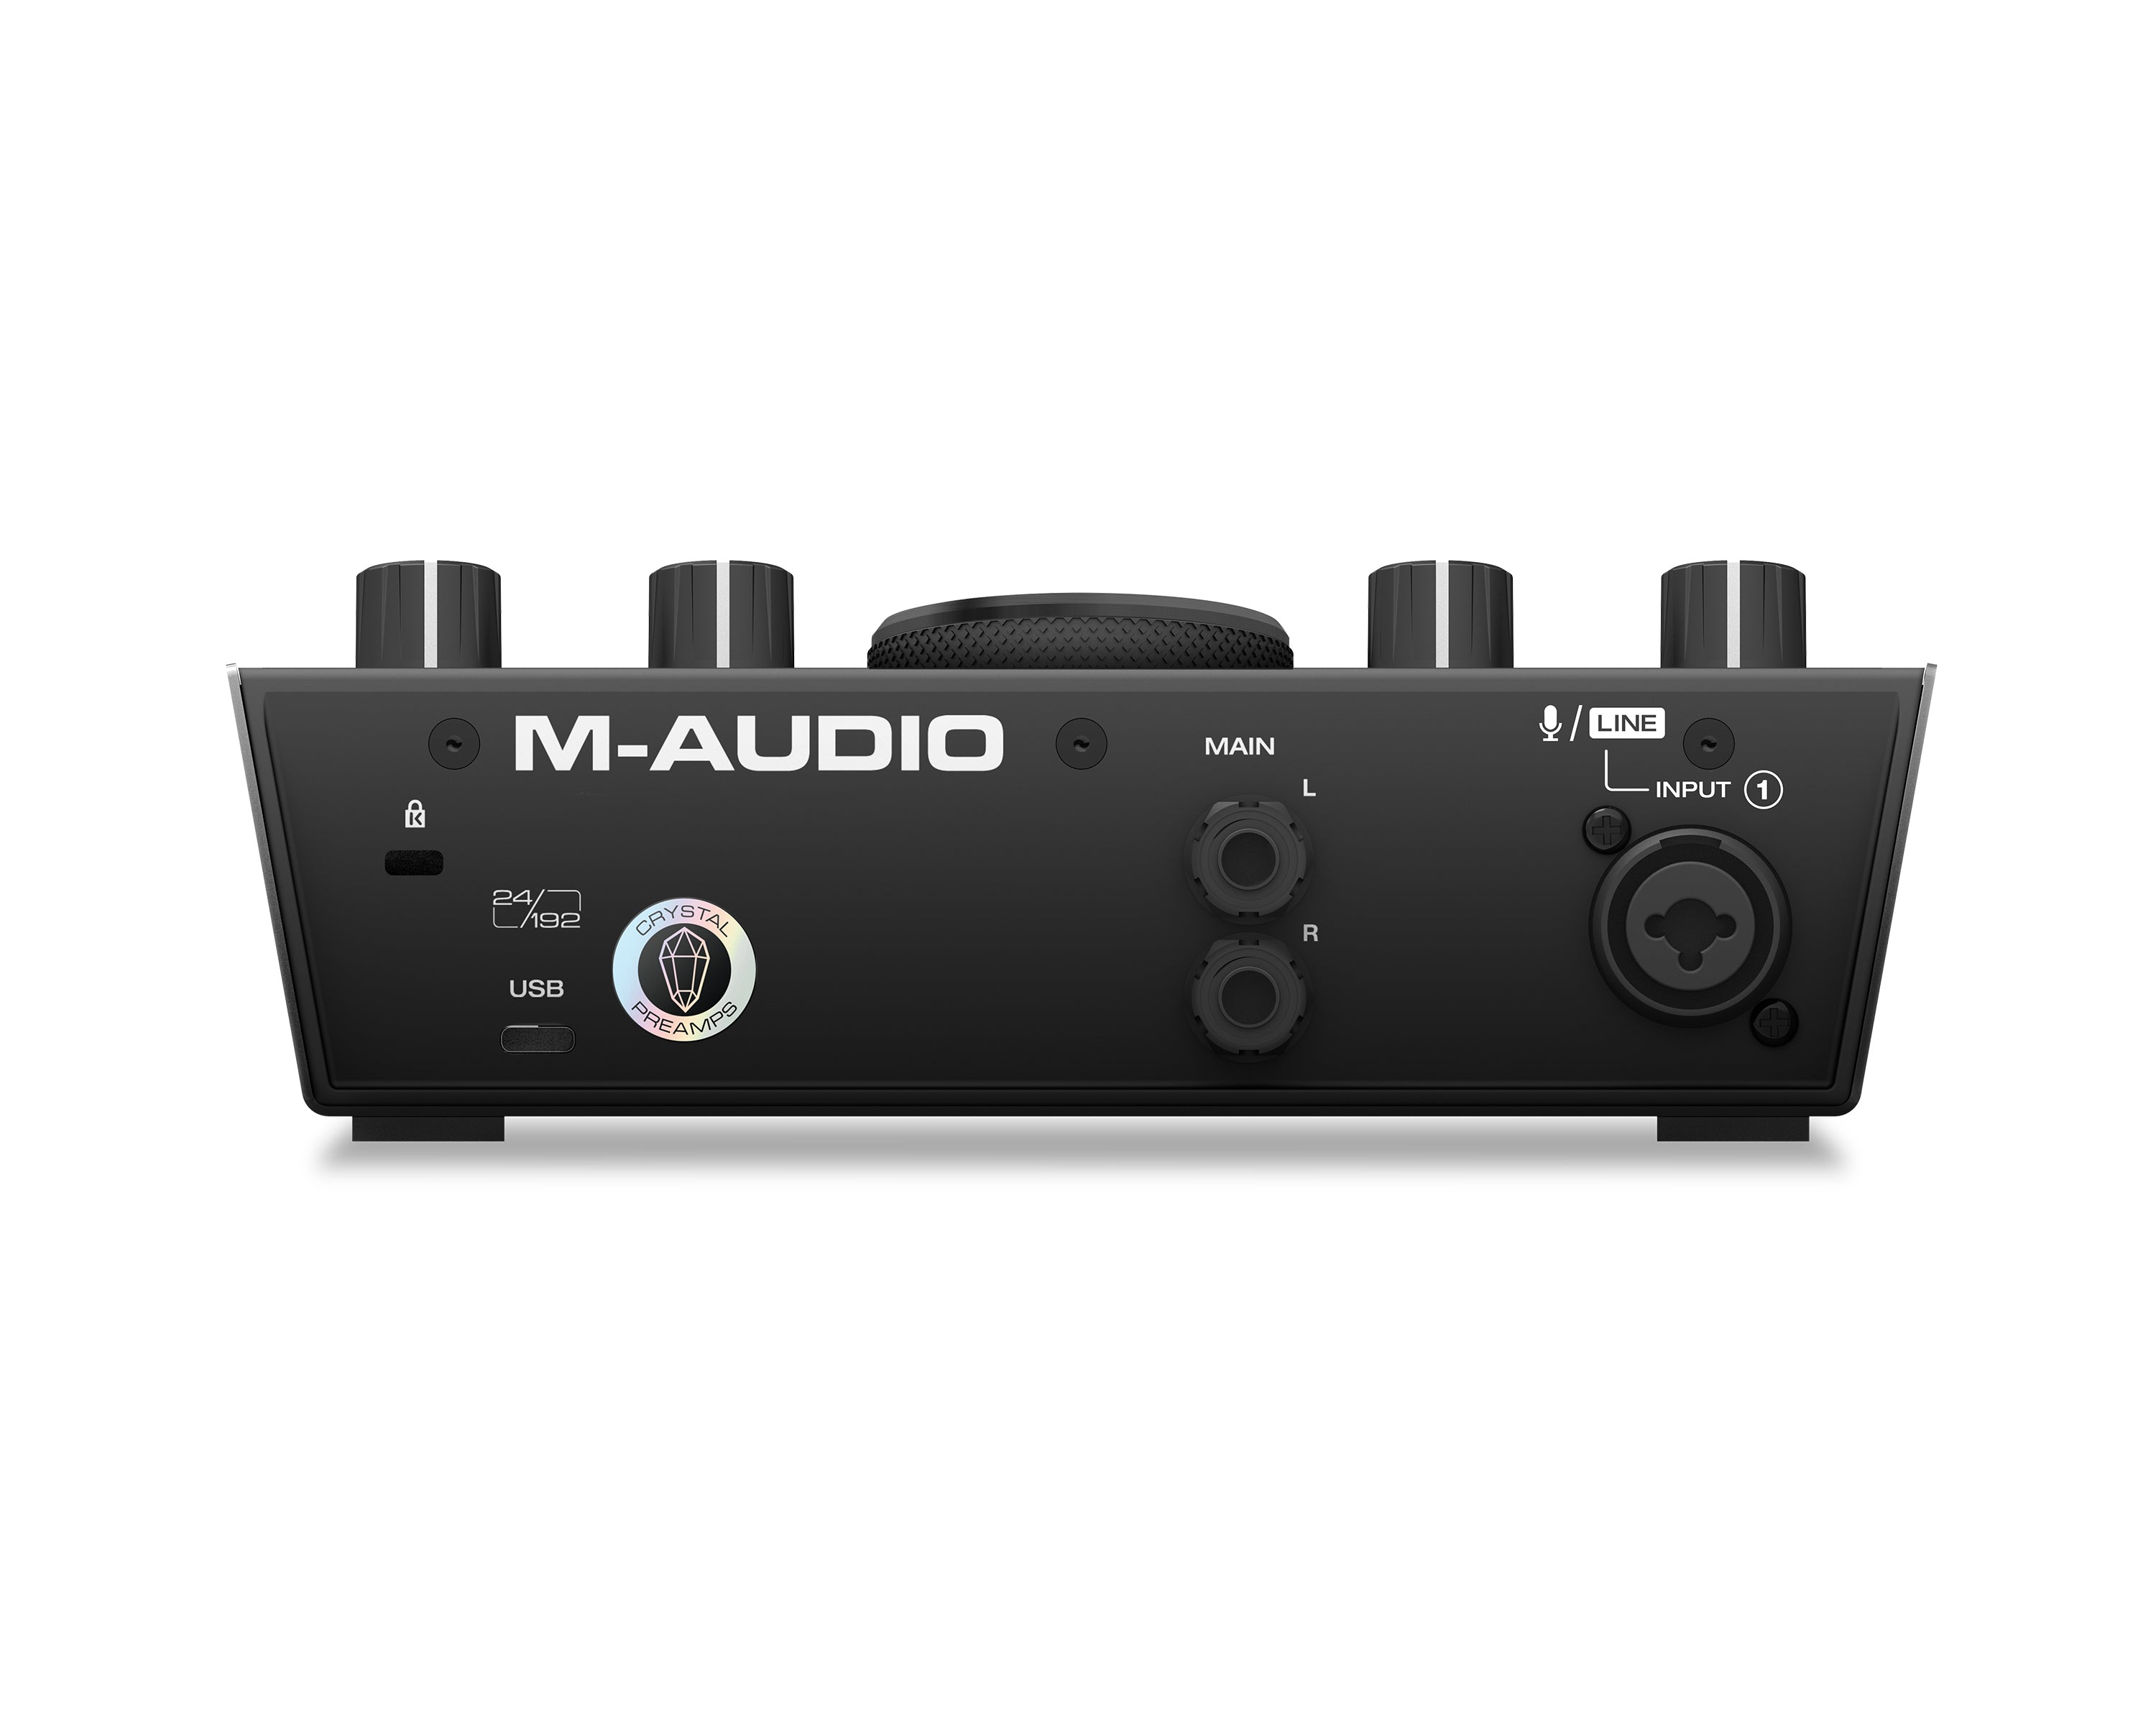 M-Audio AIR 192|4 USB C Audio Interface